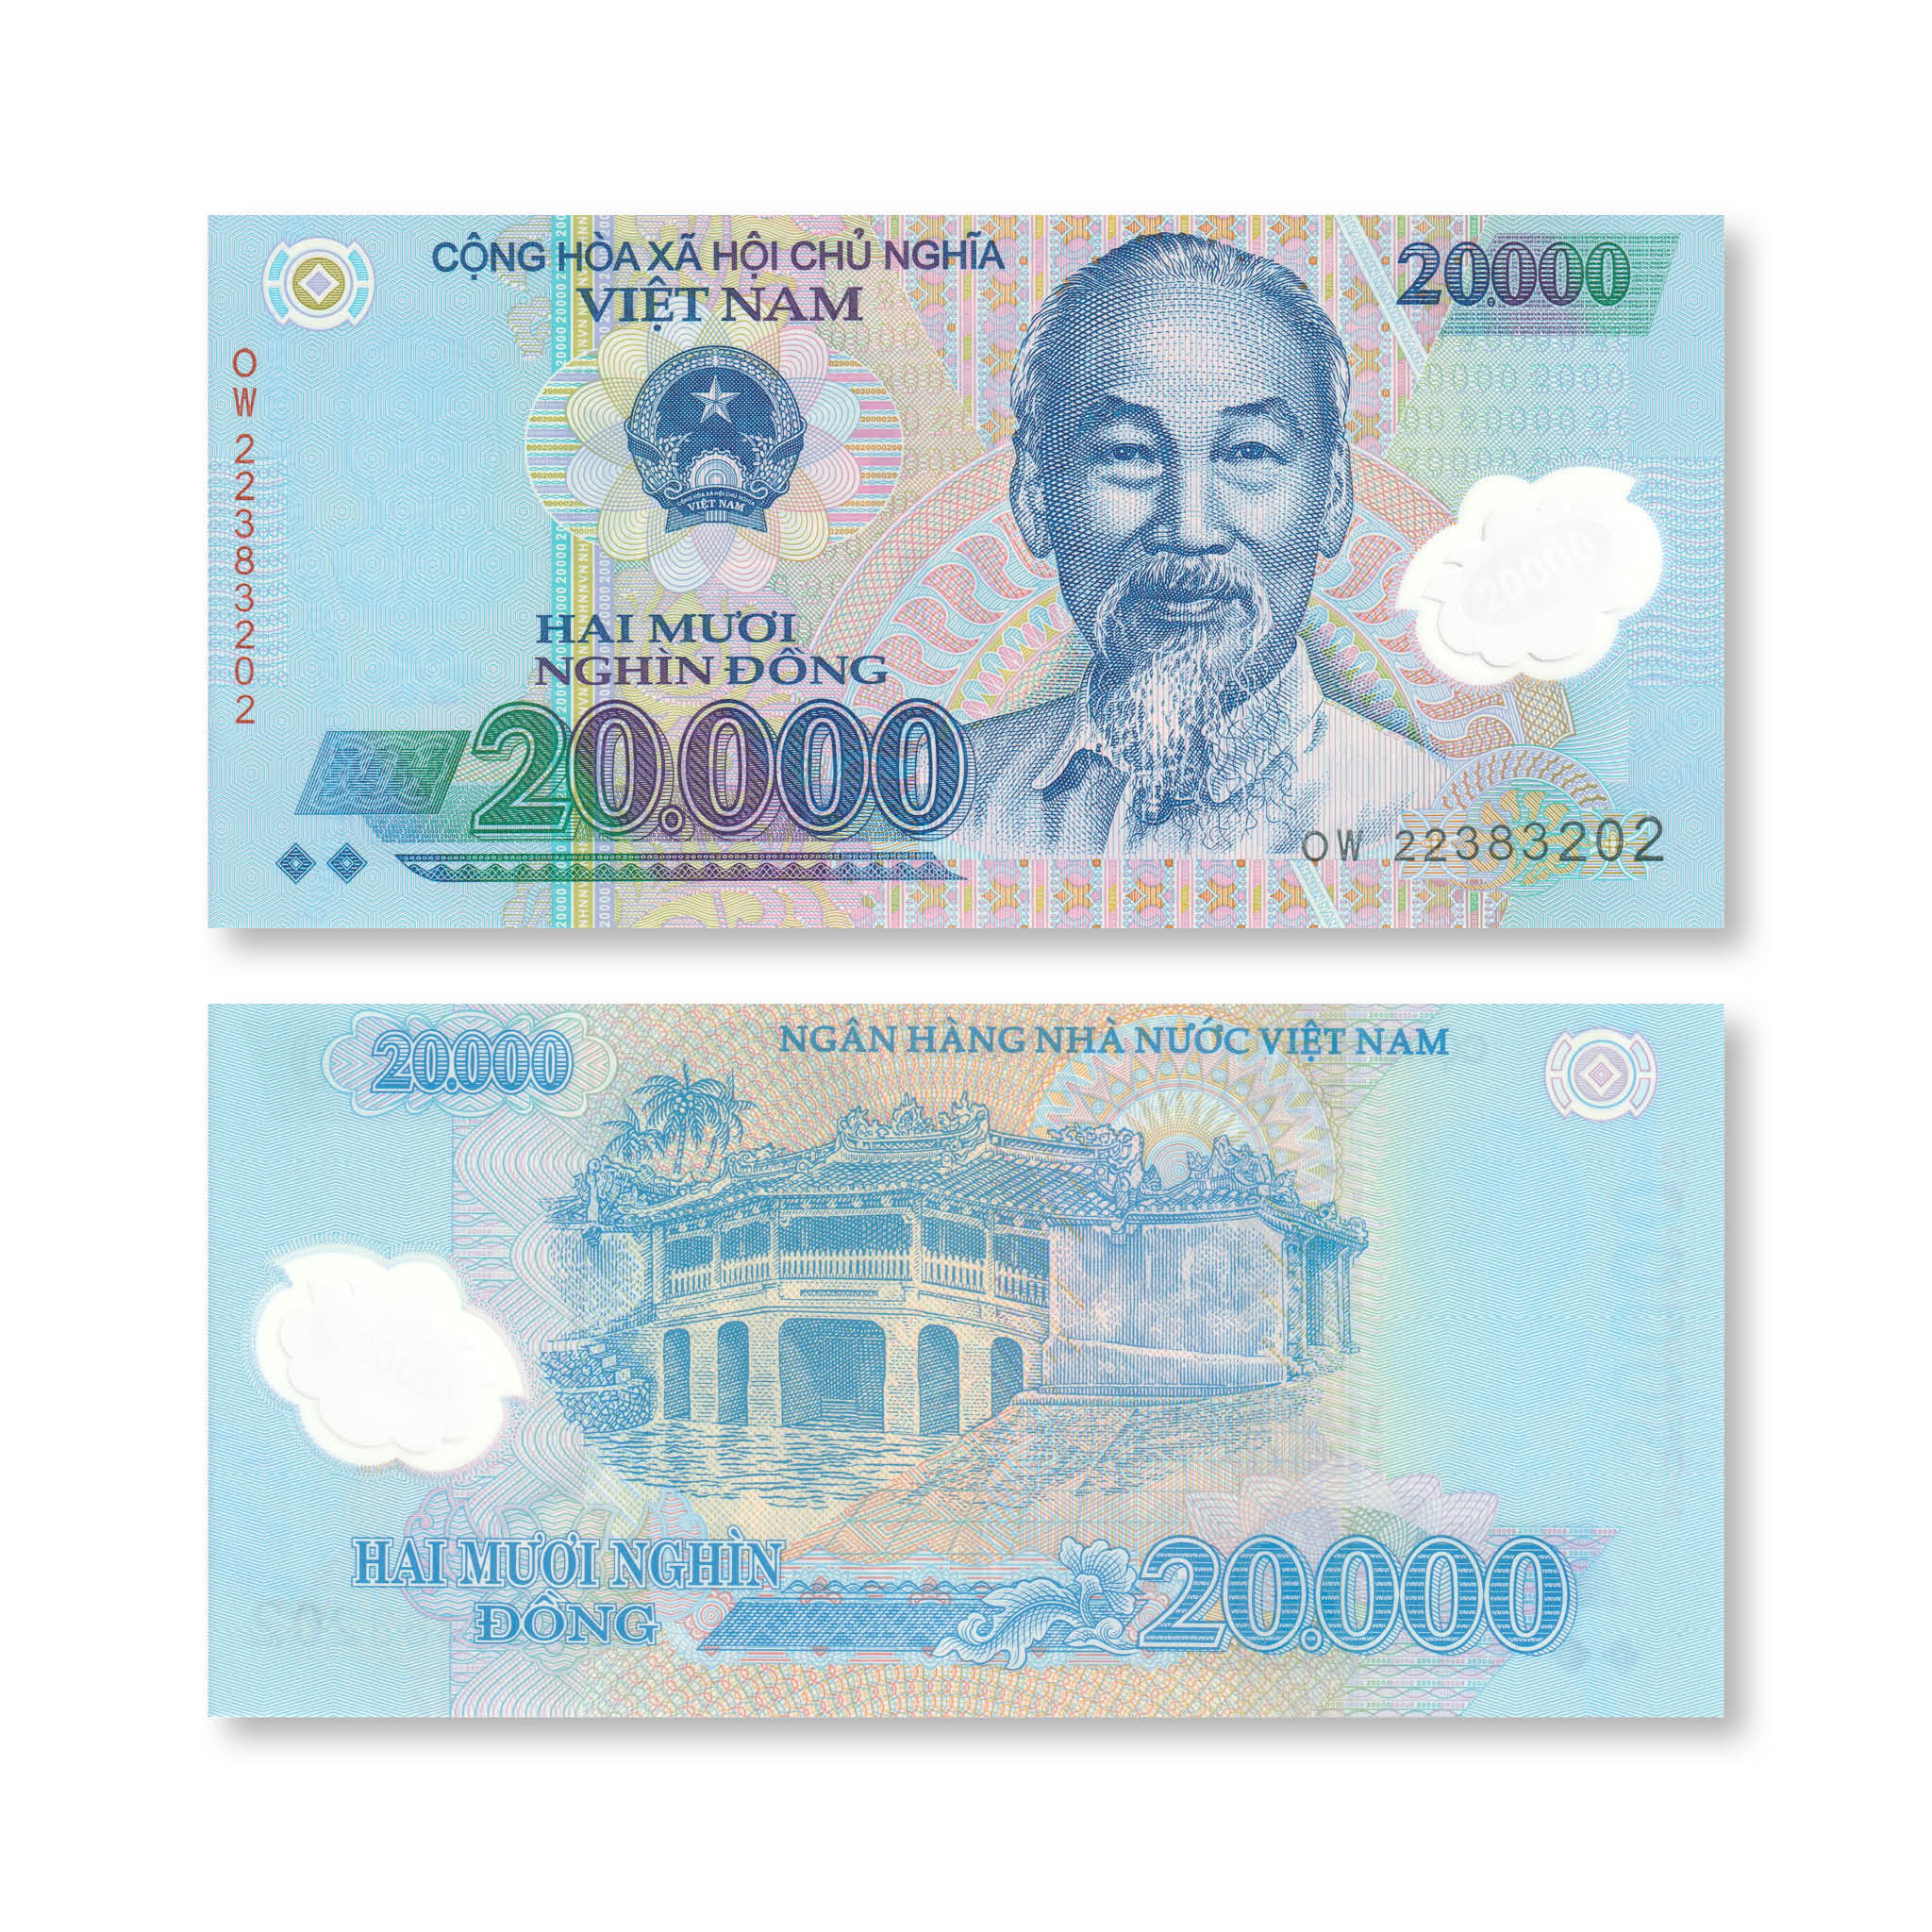 Vietnam 20000 Dong, 2022, B344m, P120, UNC - Robert's World Money - World Banknotes